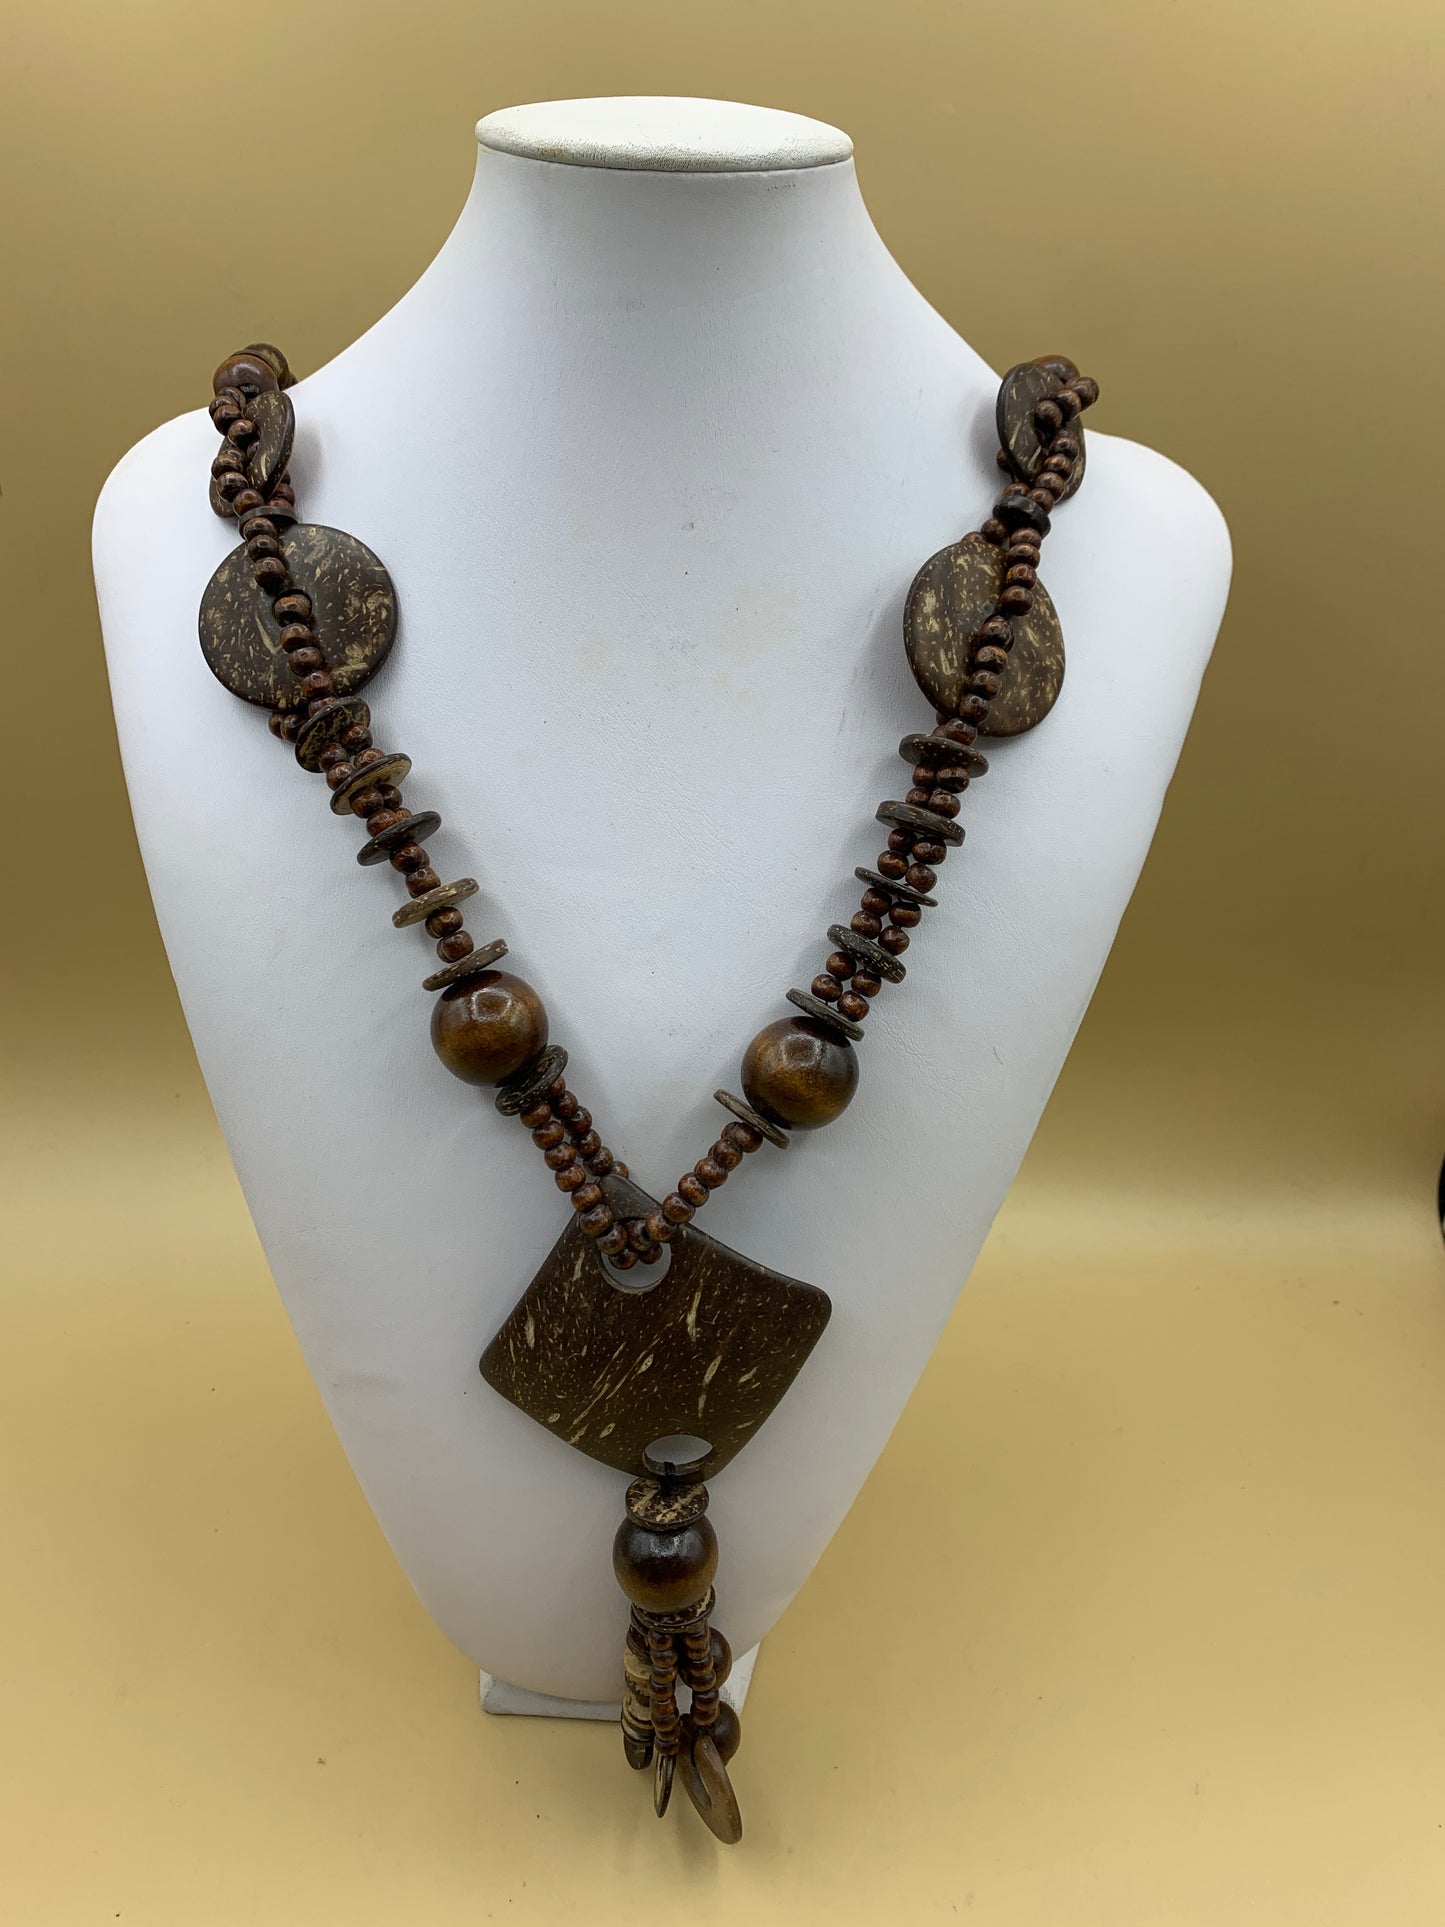 Halskette mit Seil und Kokosnuss-Anhänger